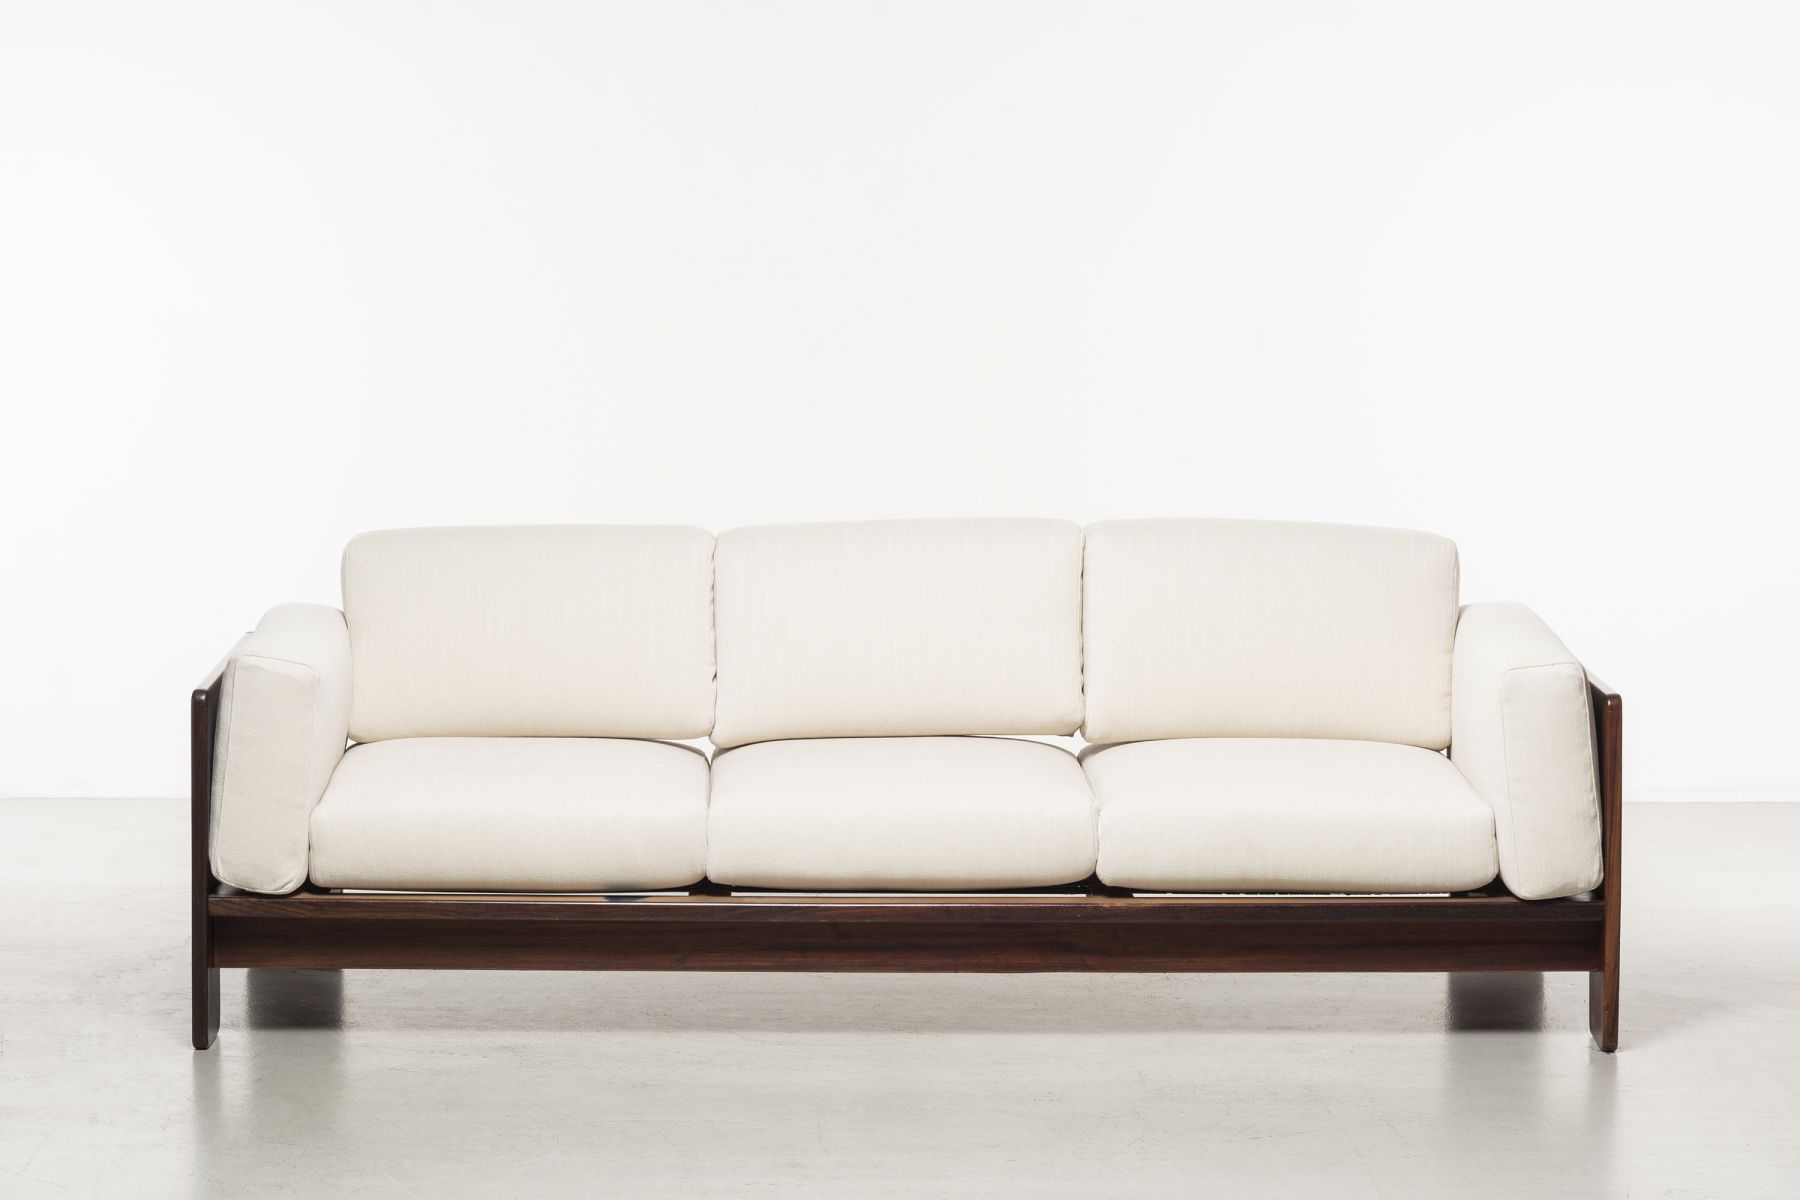 Three-seats sofa mod. Bastiano Afra e Tobia Scarpa pic-1